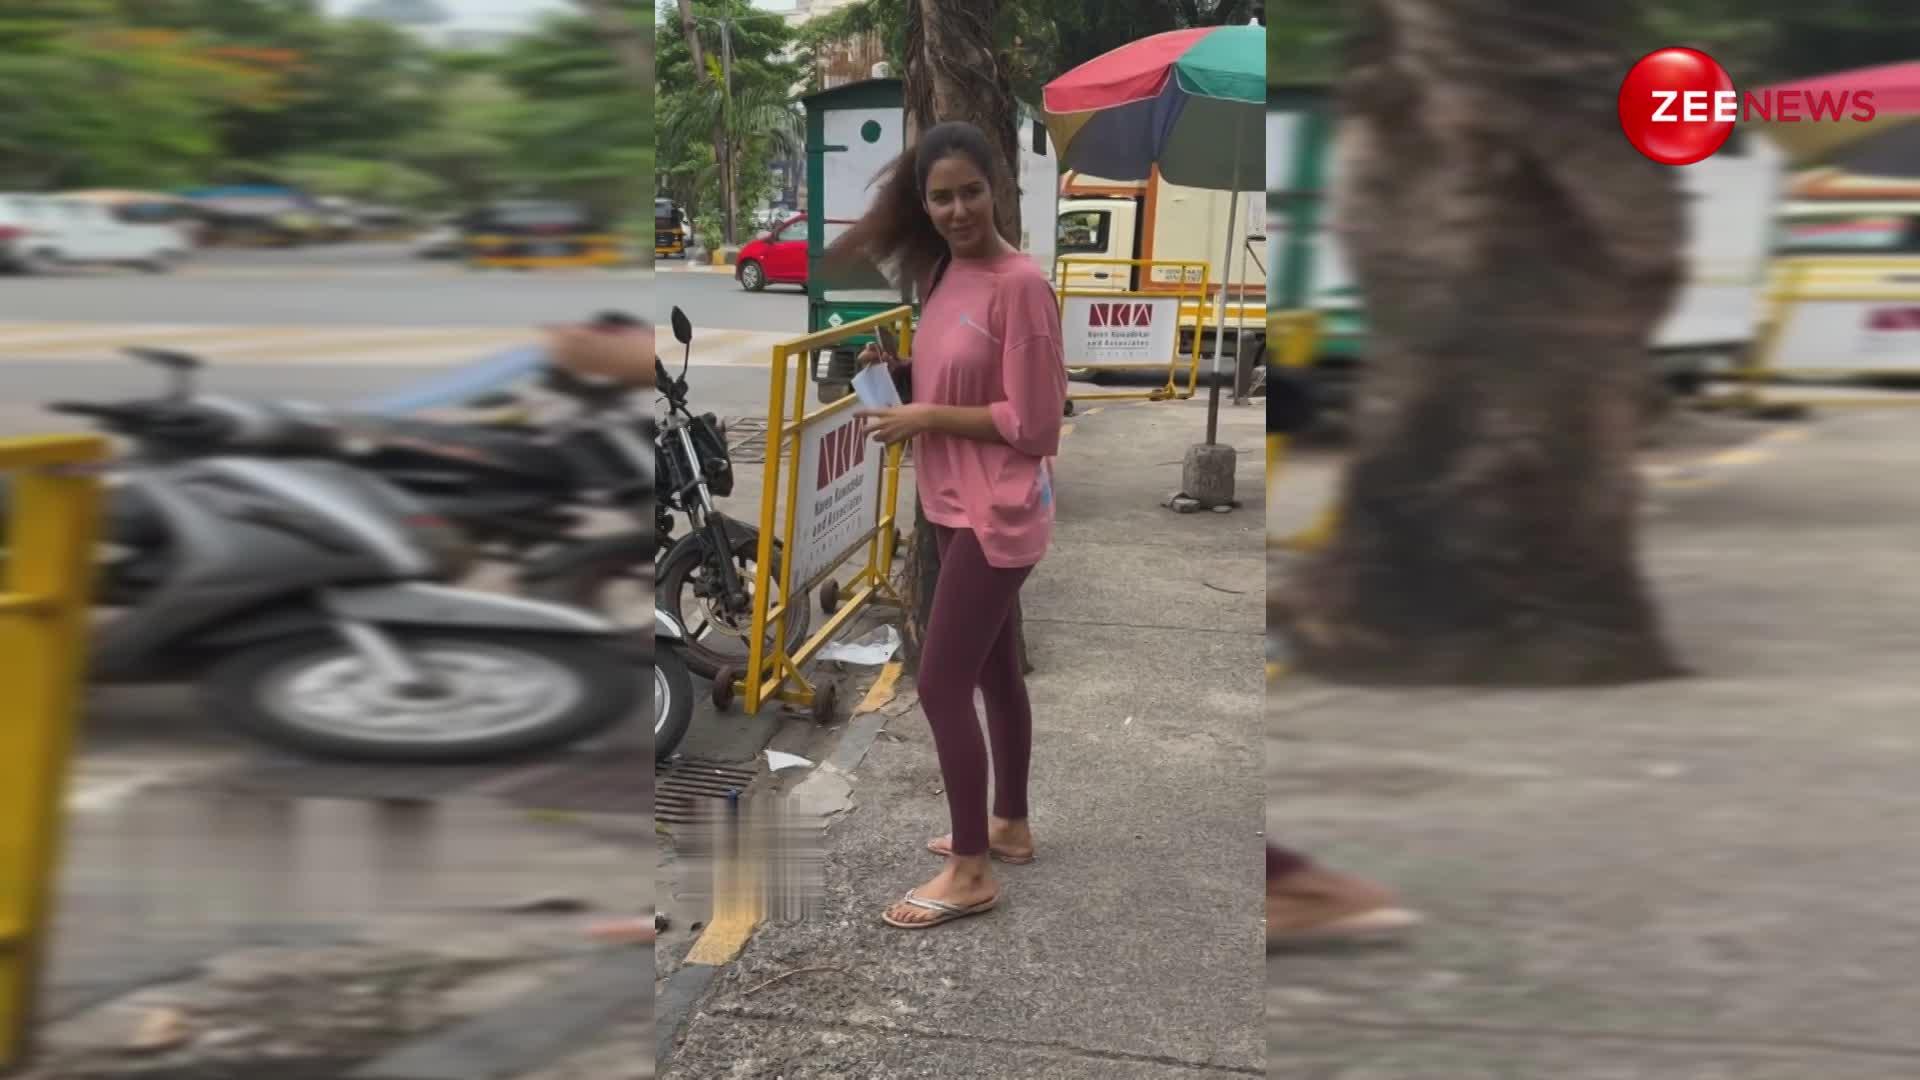 सिंपल टीशर्ट और चप्पलें पहन पैप्स के कैमरे में रिकॉर्ड हुईं नेशनल क्रश Sonam bajwa, अदाओं से लगाई इंटरनेट पर आग